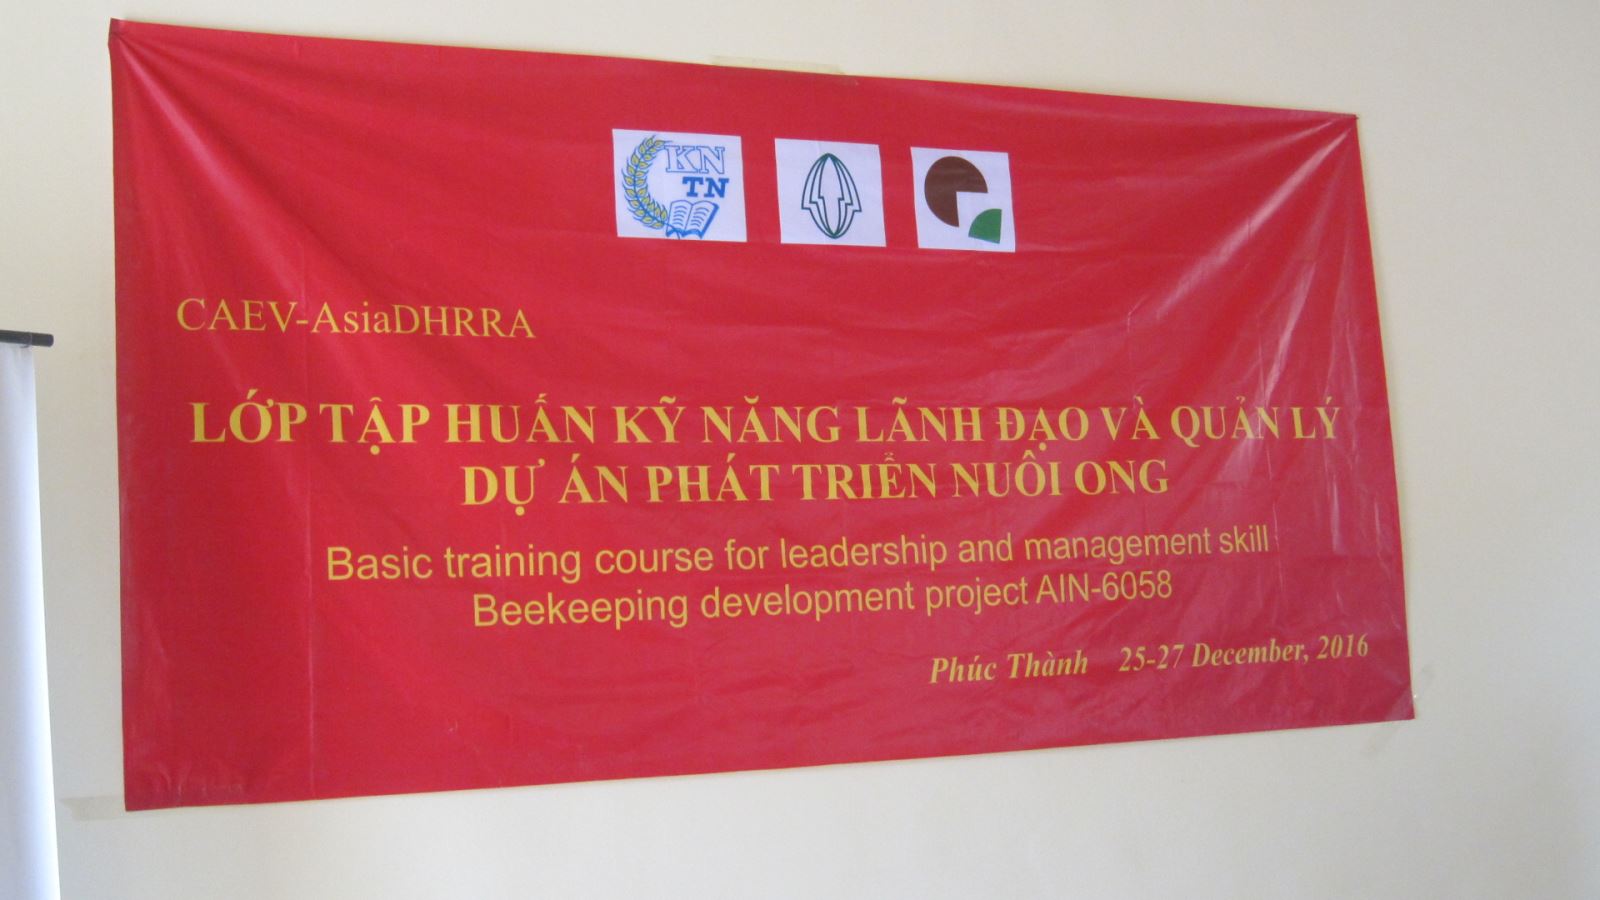 Lớp tập huấn "kỹ năng lãnh đạo và quản lý" cho các tình nguyện viên dự án AIN 6058 tại Phúc Thành, Thái nguyên